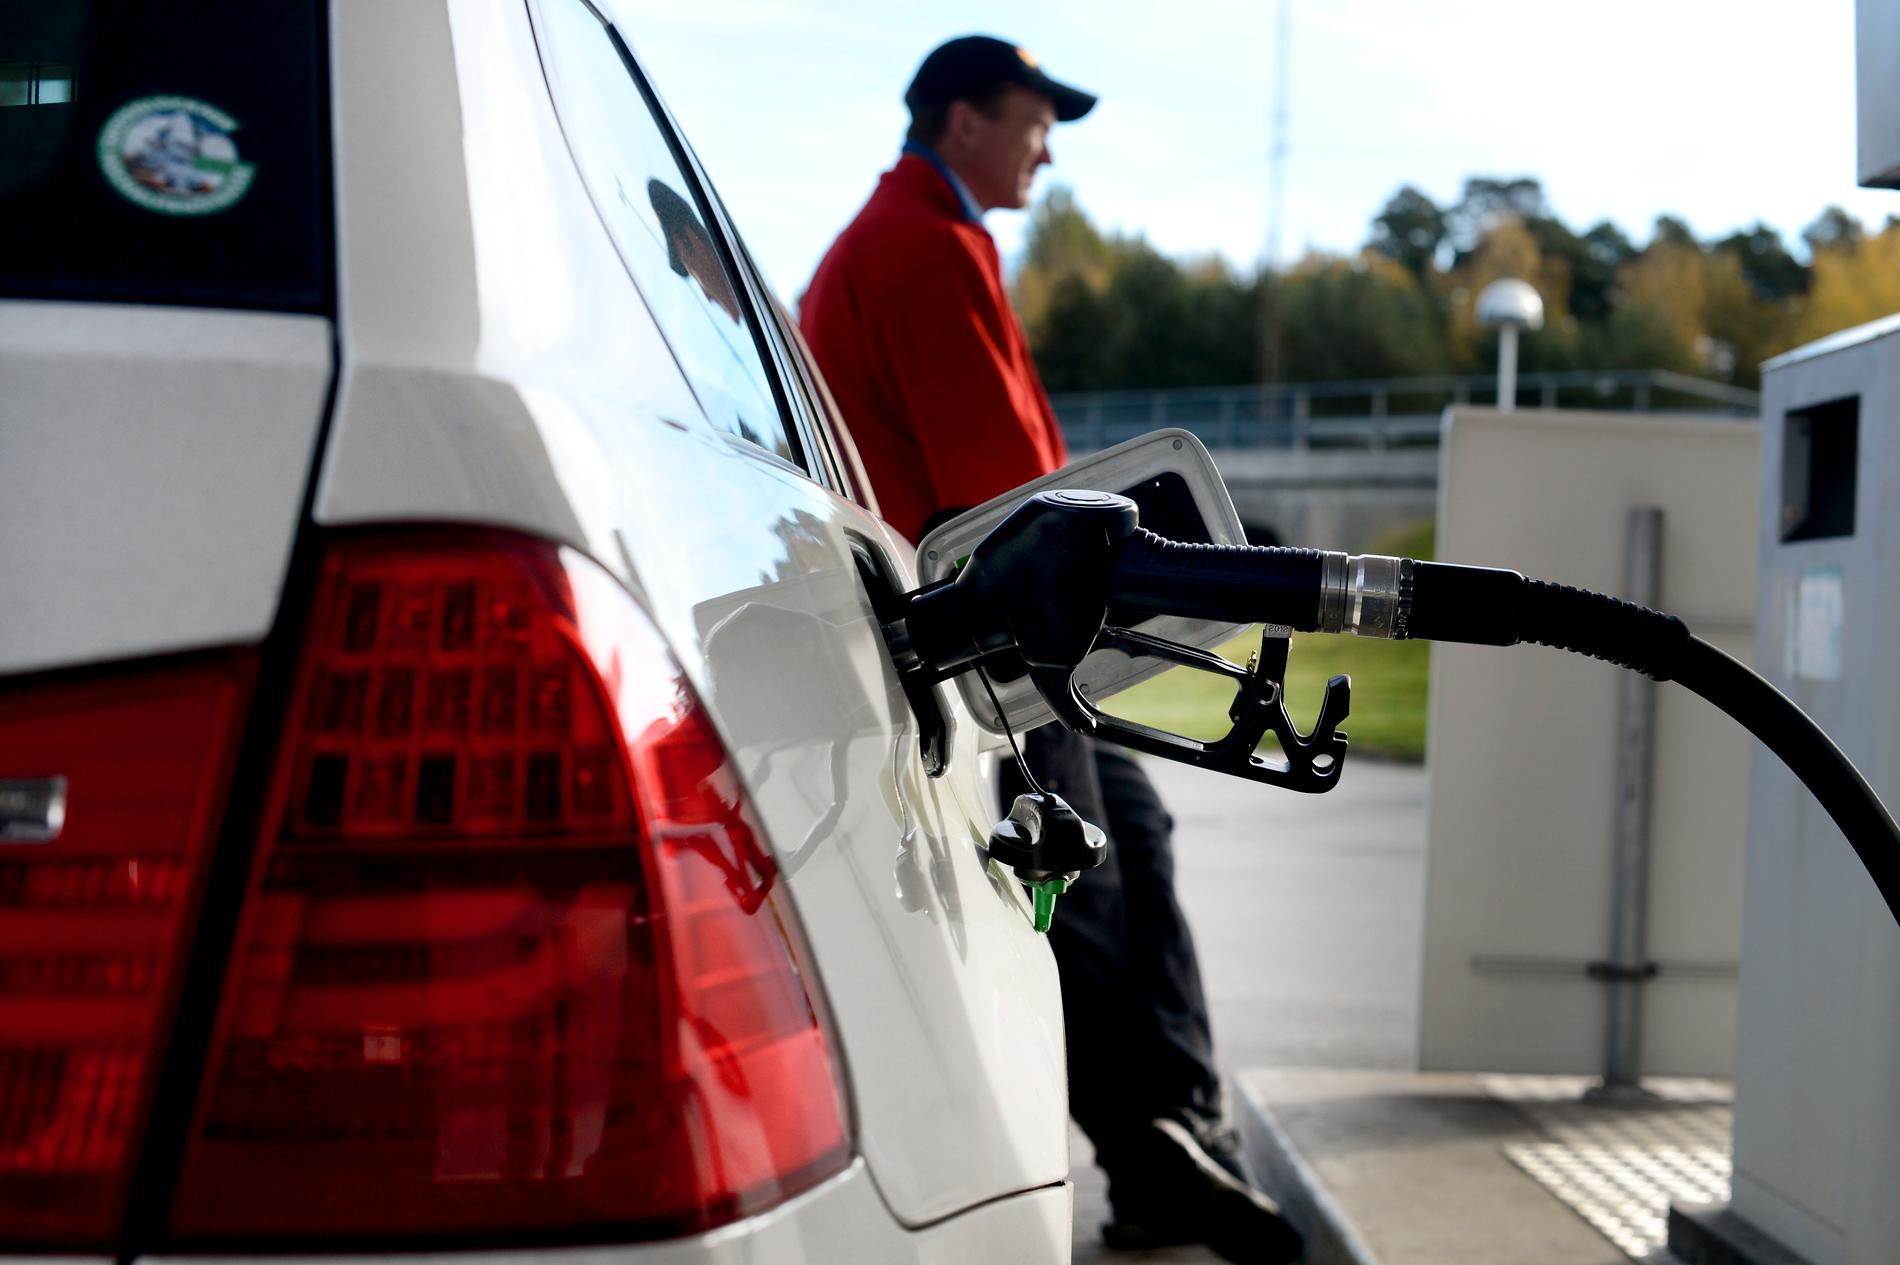 ”I Sverige sänktes bensinskatten när bränslepriserna gick upp. För alla, även för dem som kan betala soppan till suven.”